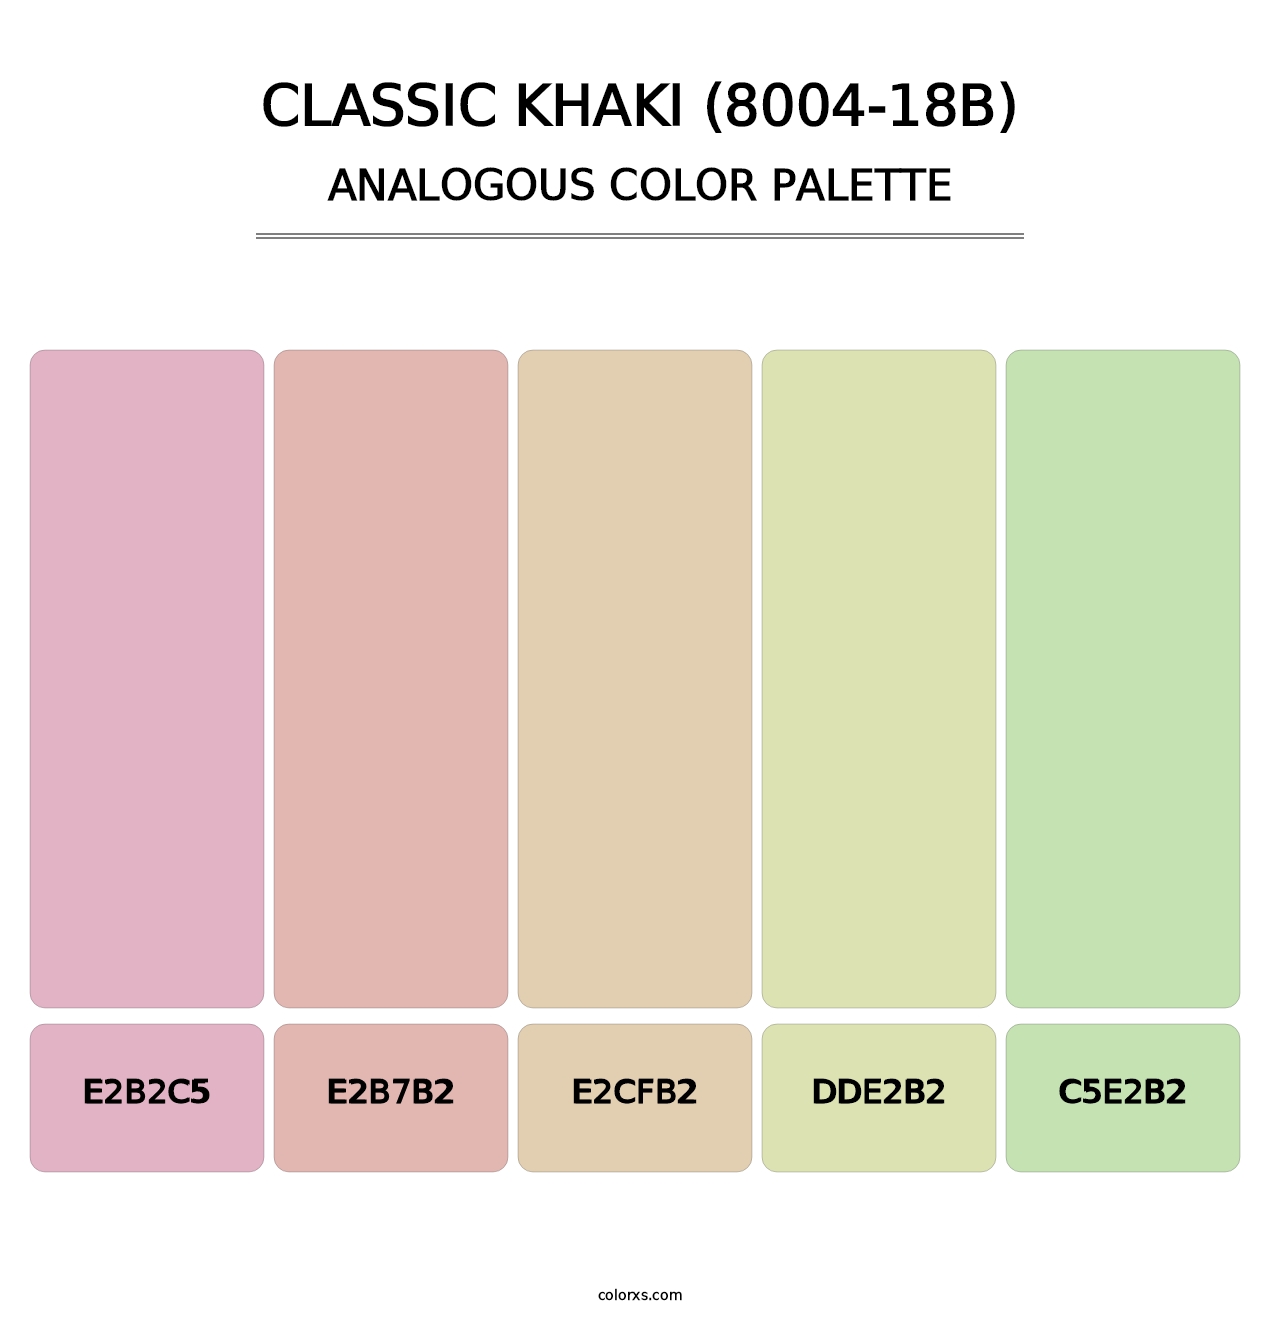 Classic Khaki (8004-18B) - Analogous Color Palette